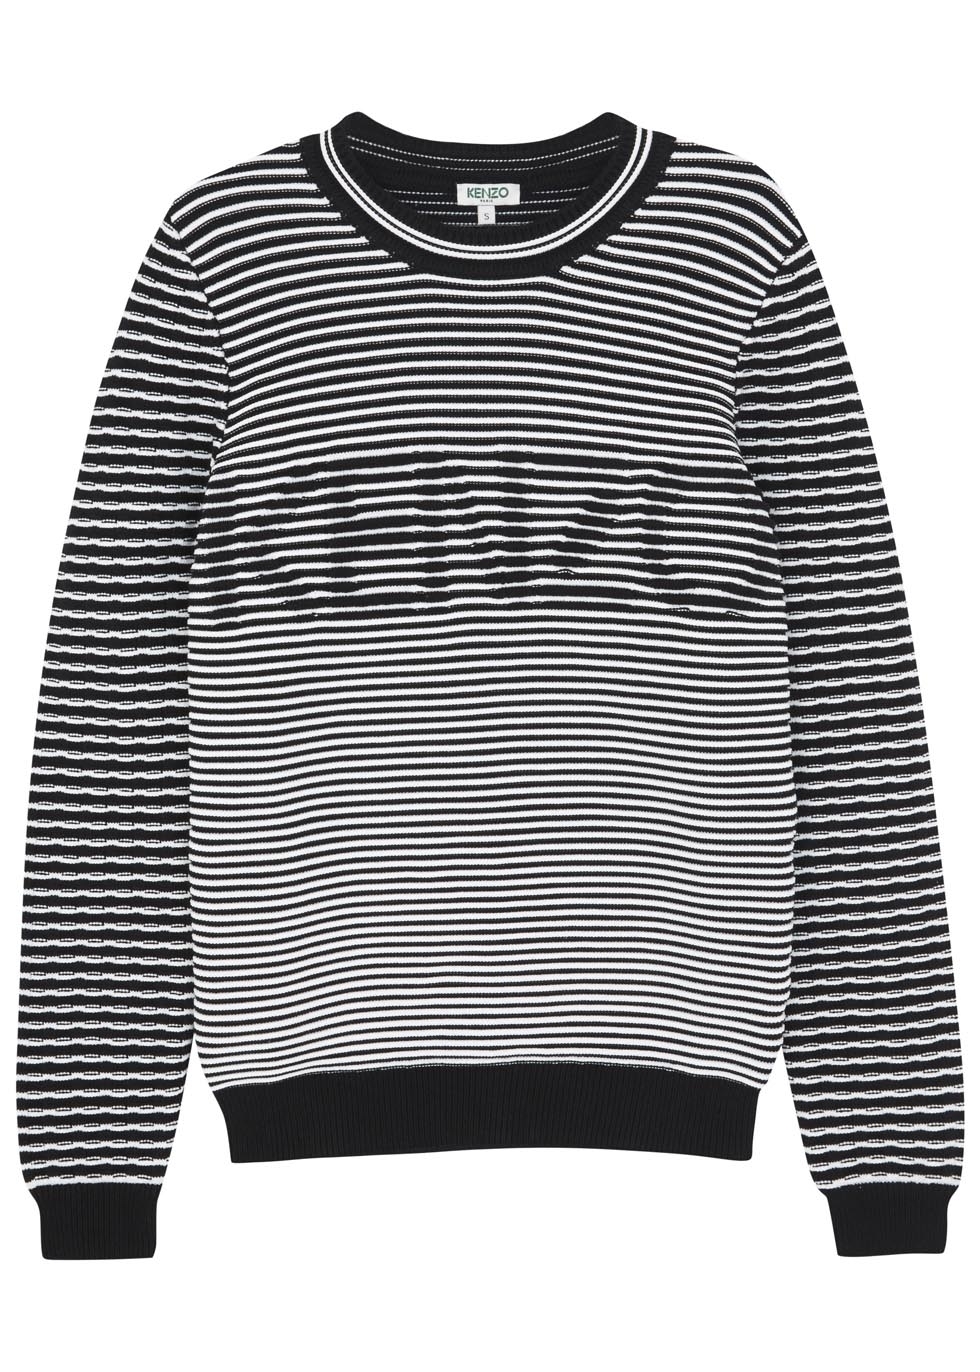 Monochrome illusion striped jumper